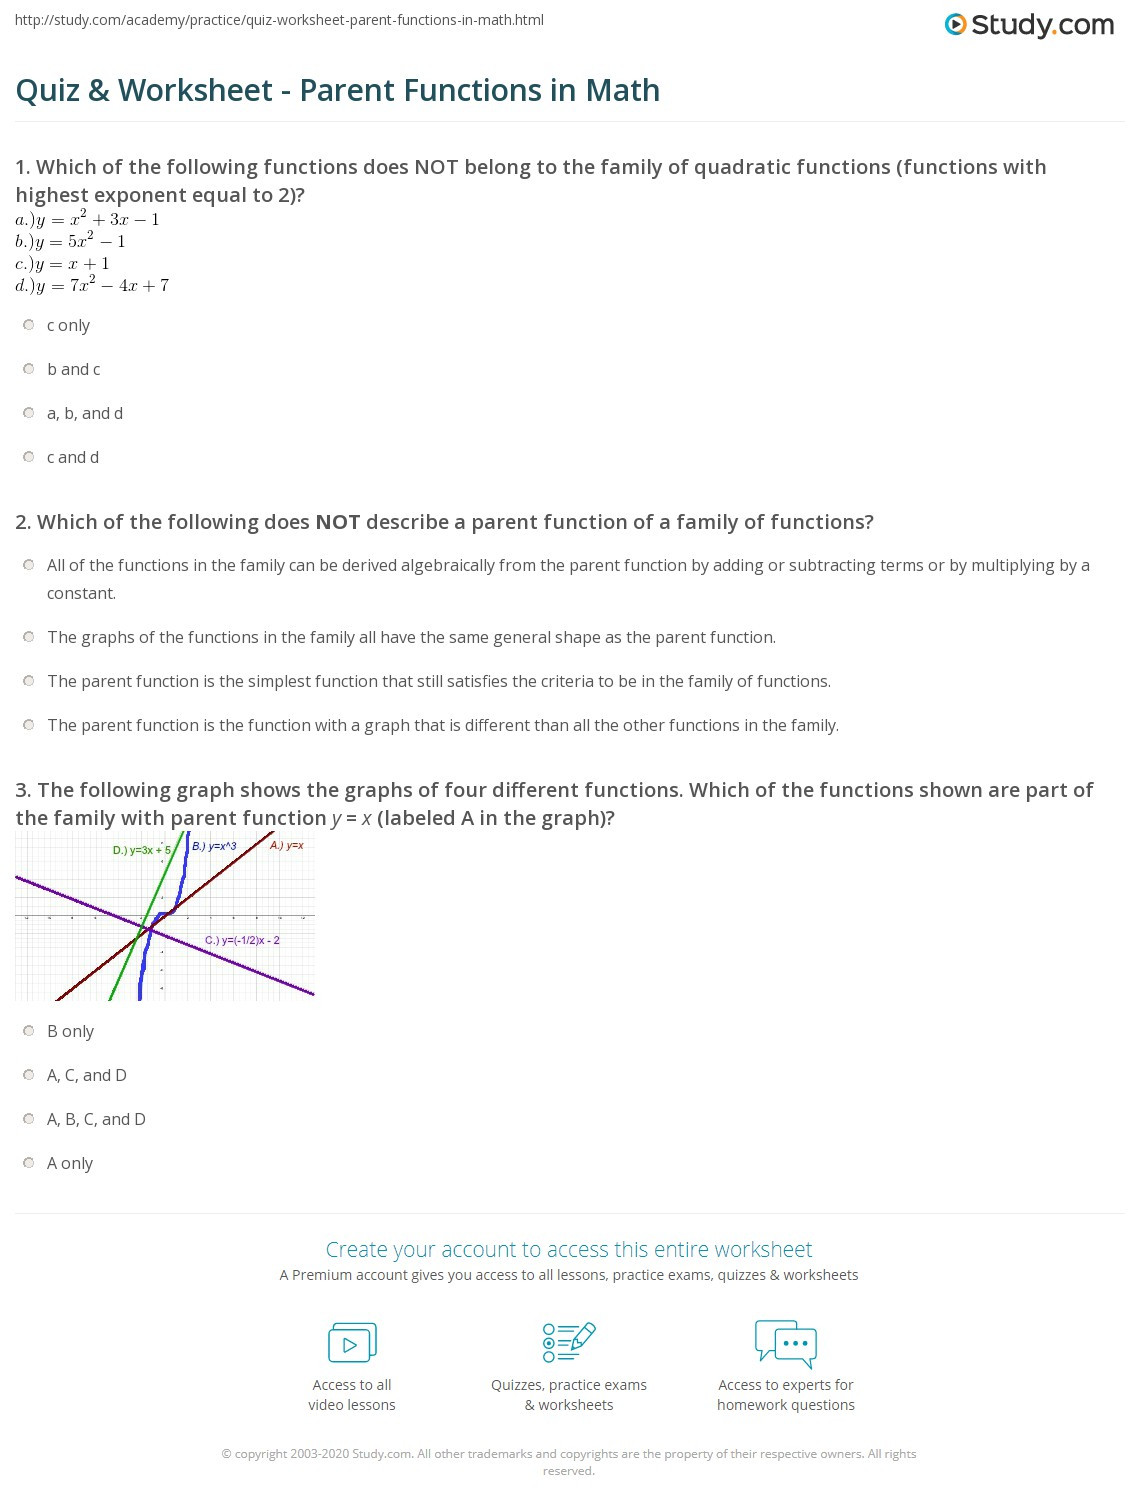 Parent Function Worksheet Answers 28 Parent Function Worksheet Answers Free Worksheet